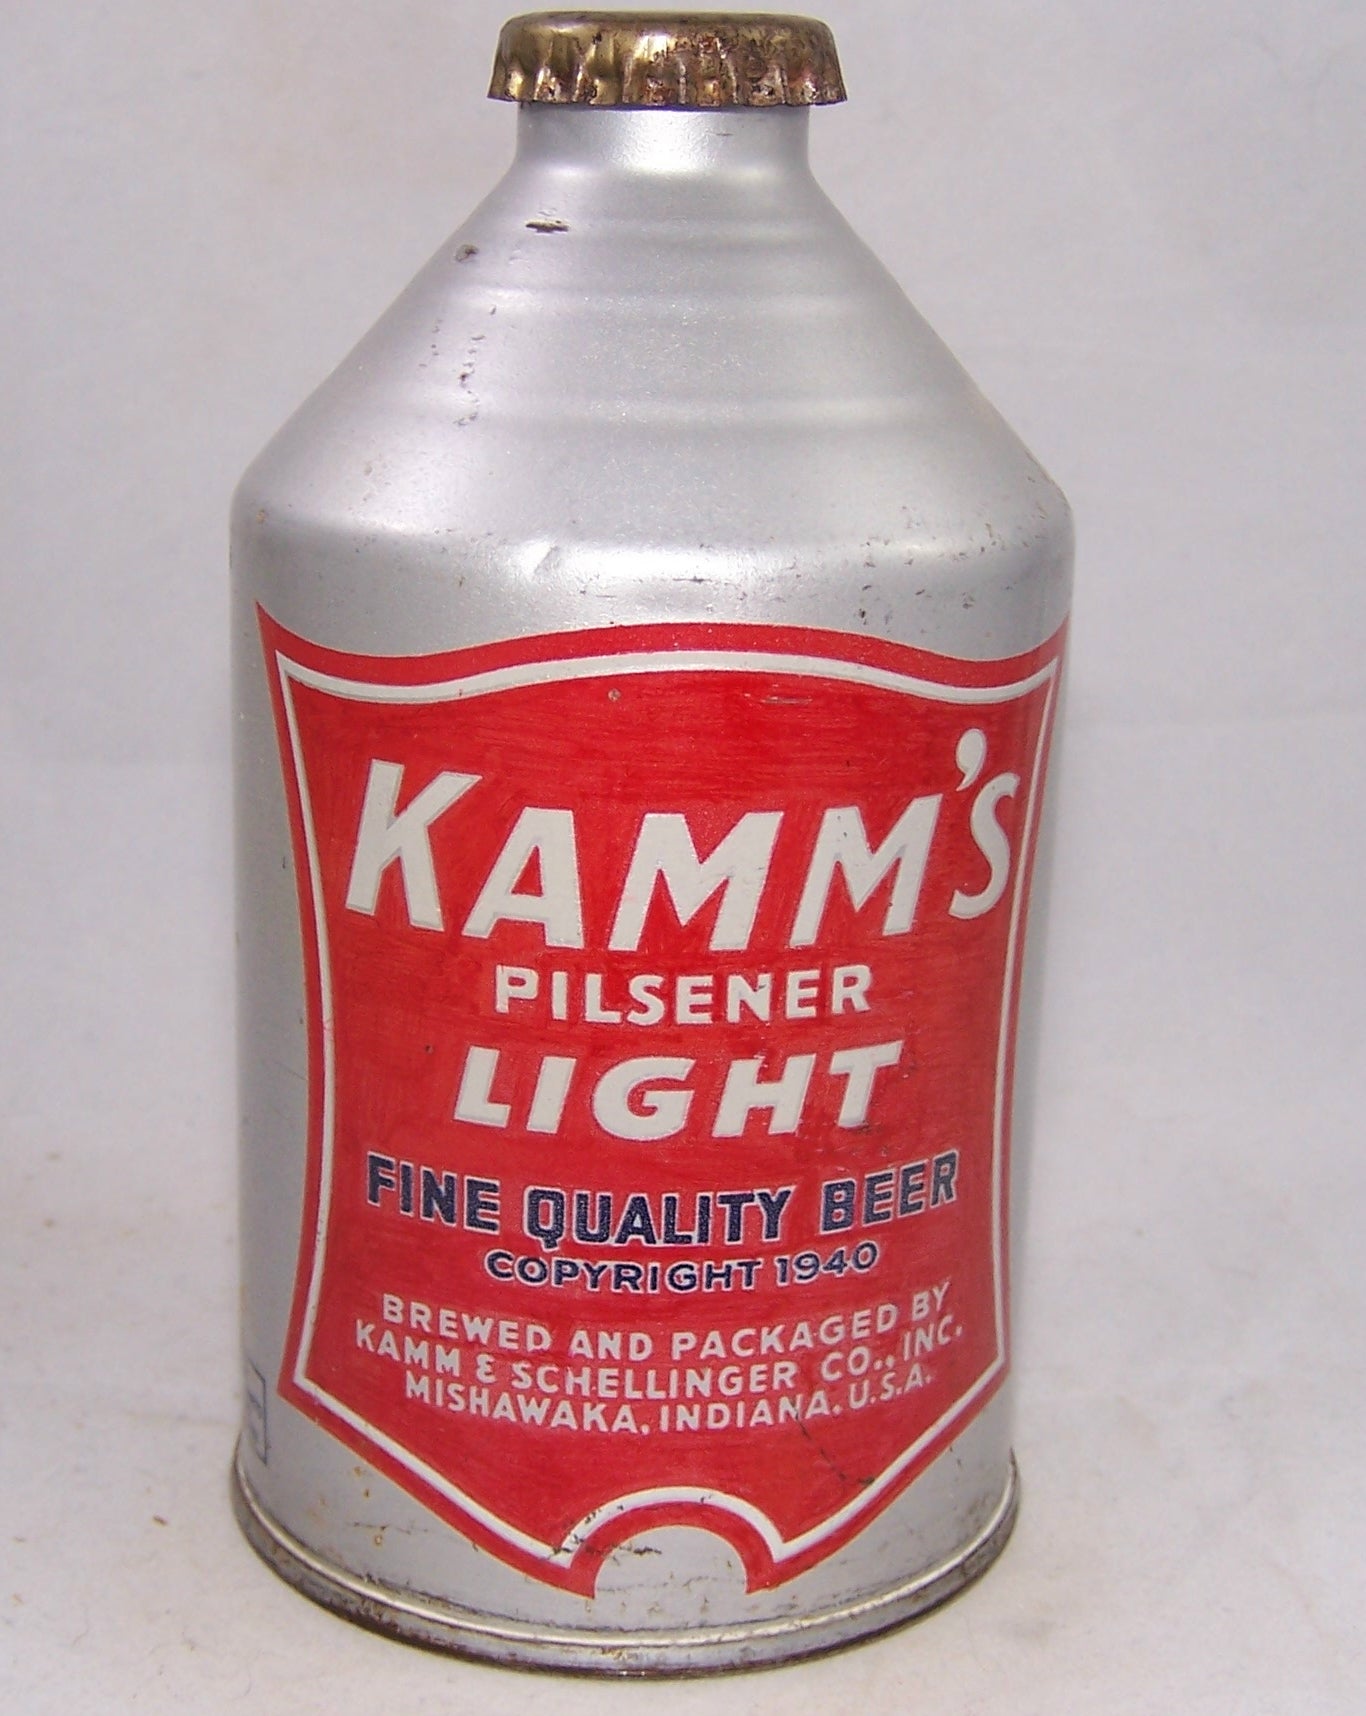 Kamm;s Pilsener Light, IRTP, USBC 196-03, Grade 1/1-